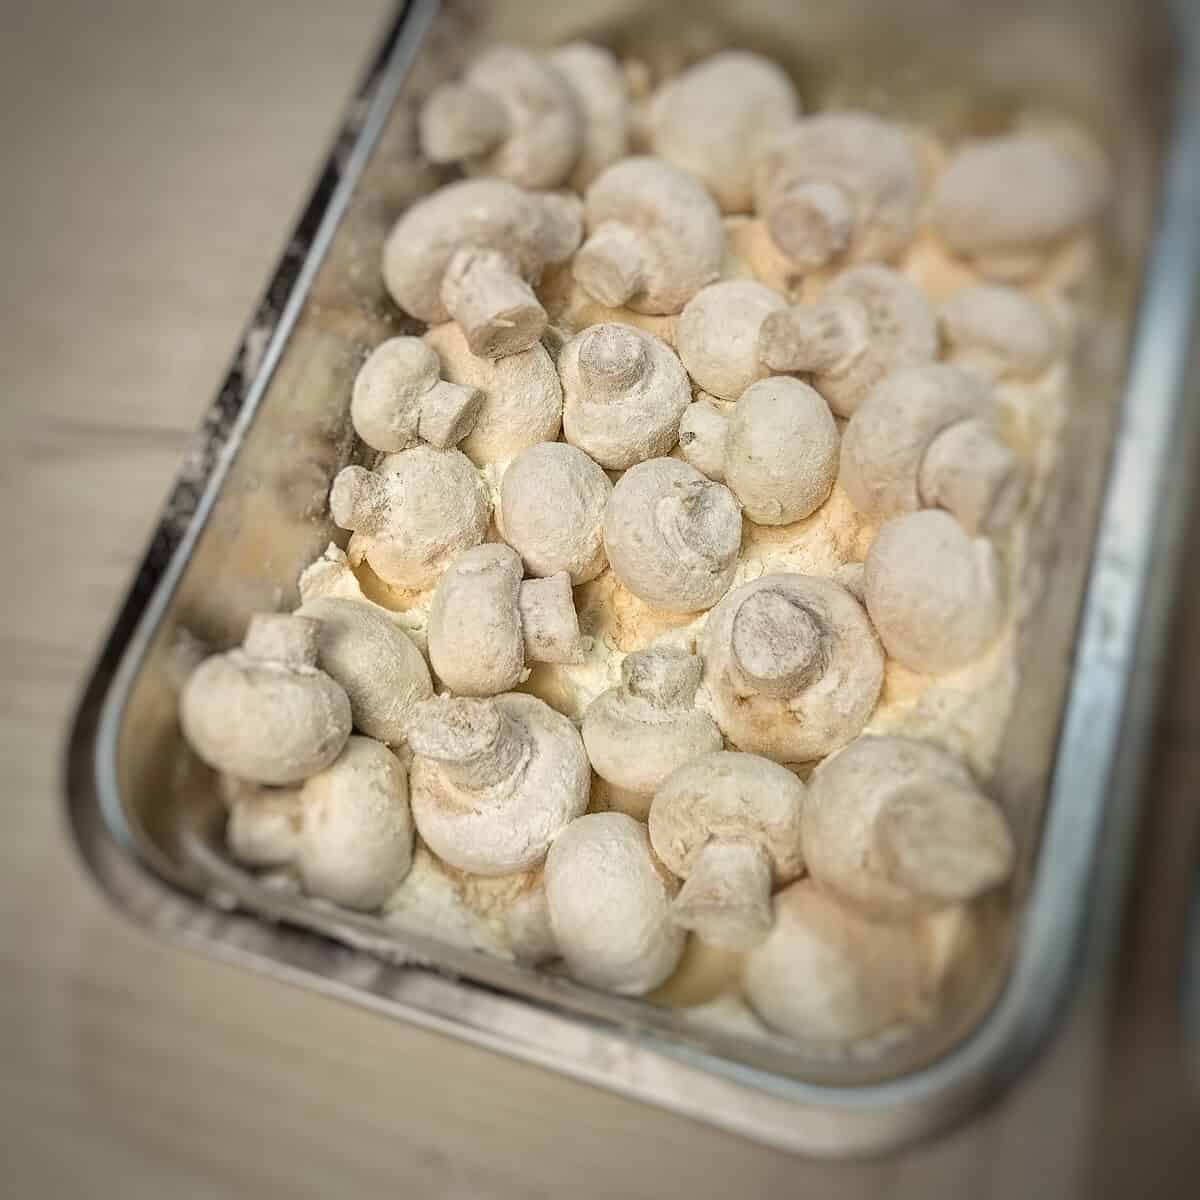 mushroom rolled in flour mixture